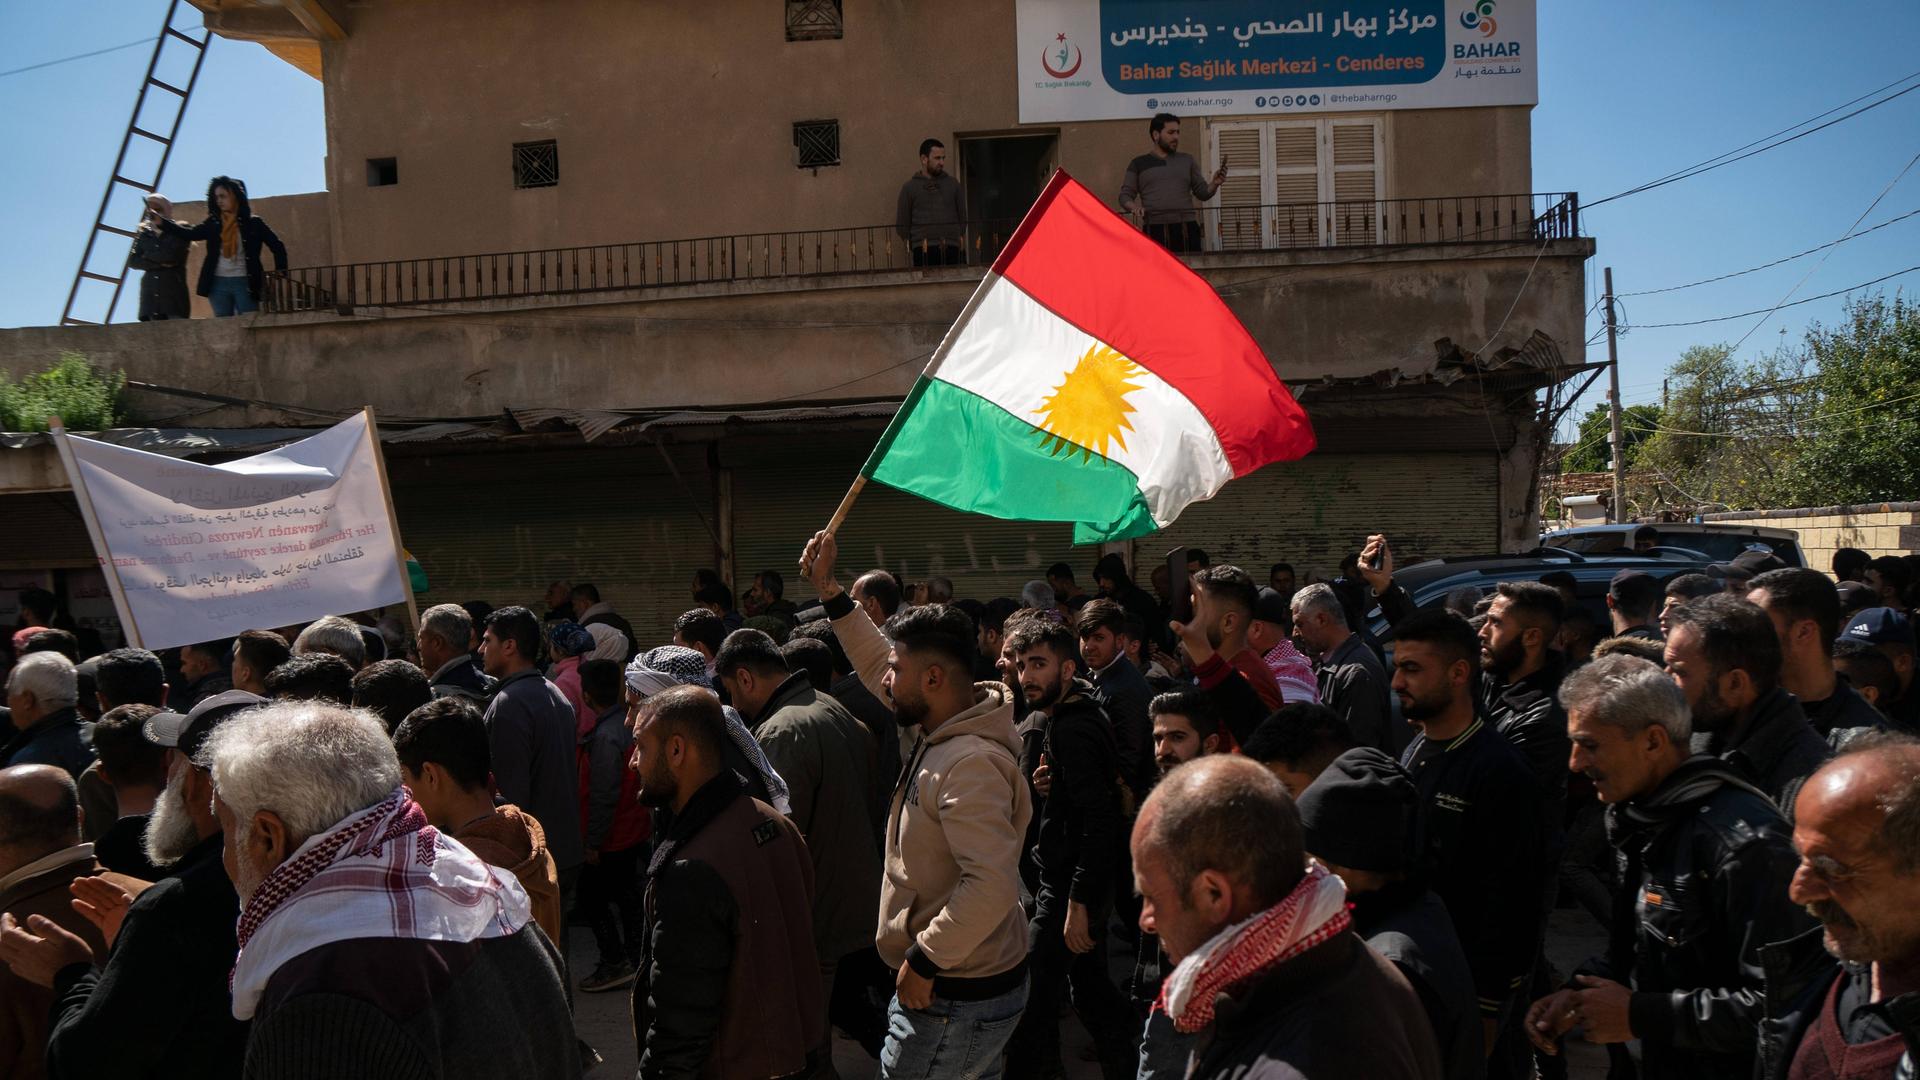 Ein Mann läuft als Mitglied in einem Beerdigungsumzug durch die Straßen und schwenkt eine kurdische Flagge.